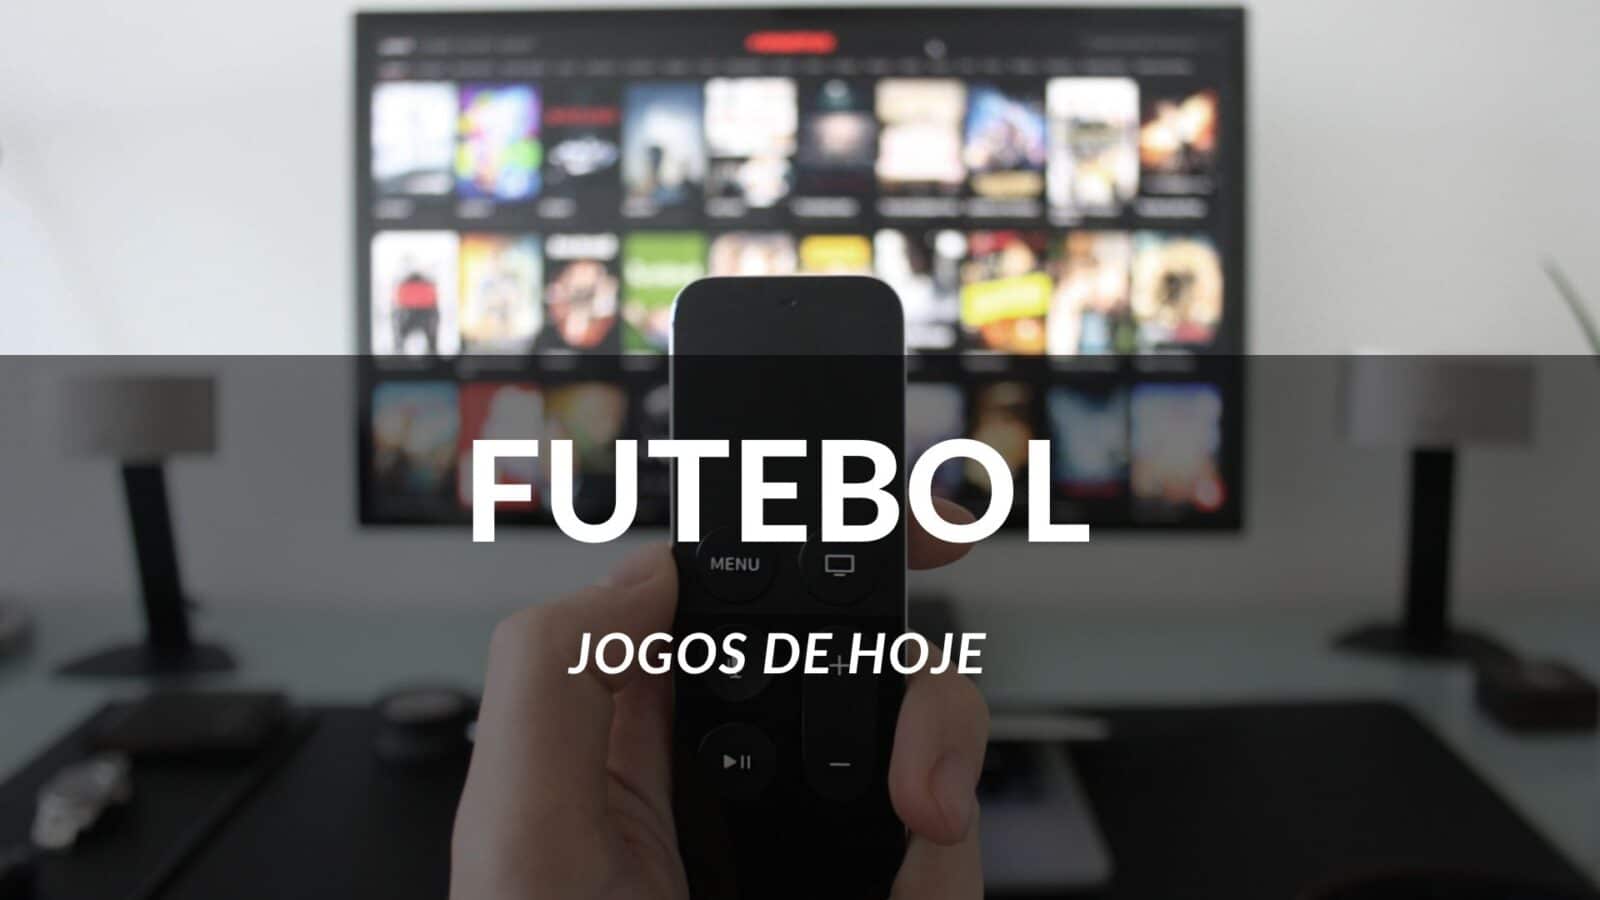 Jogos de hoje (06/12/23): confira a agenda do futebol ao vivo